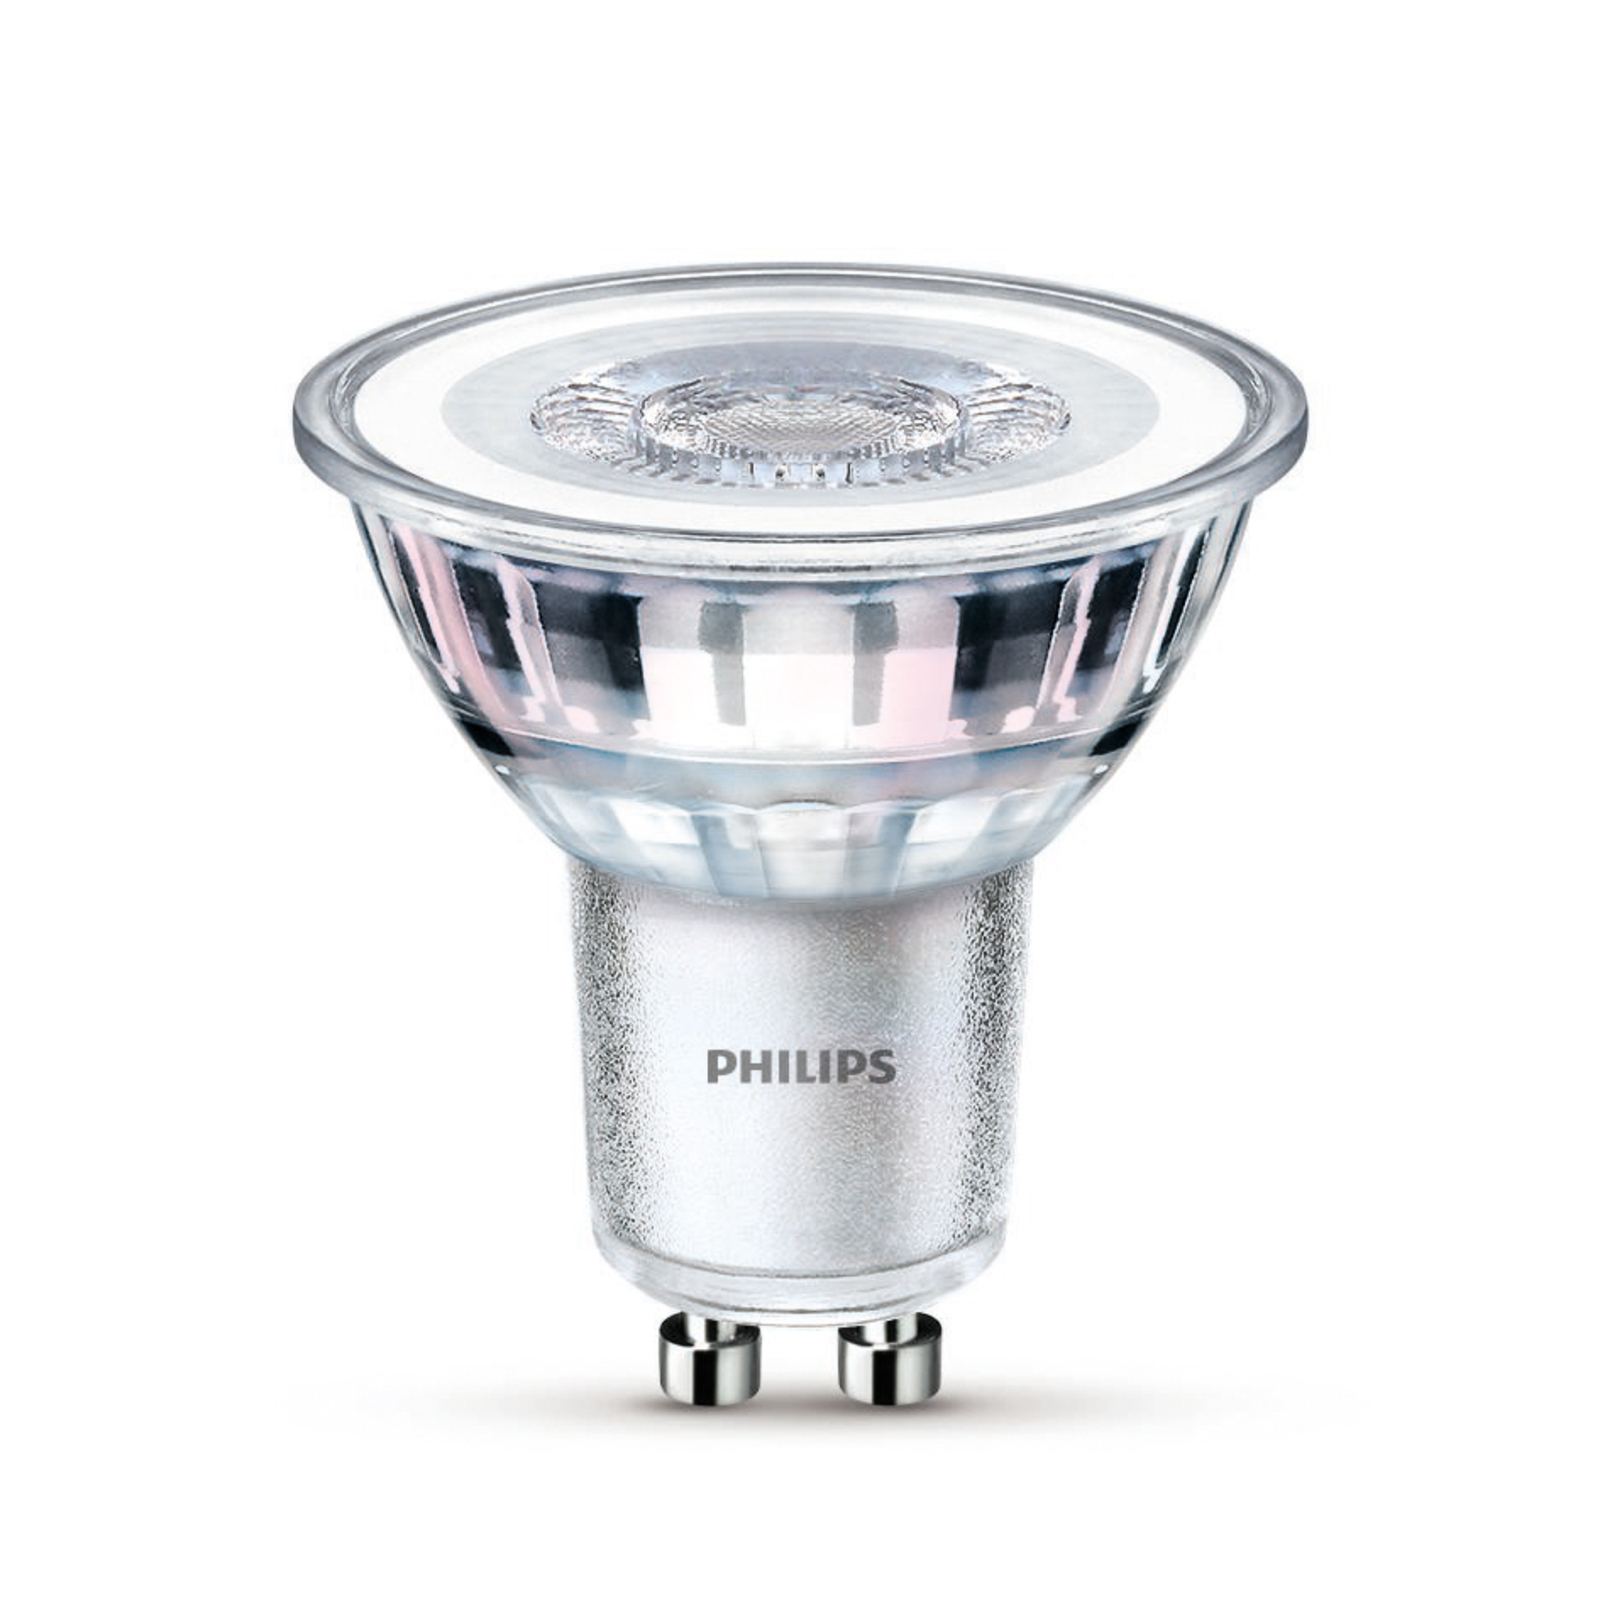 Philips LED-Lampe GU10 3,5W 255lm 827 klar 36° 6er